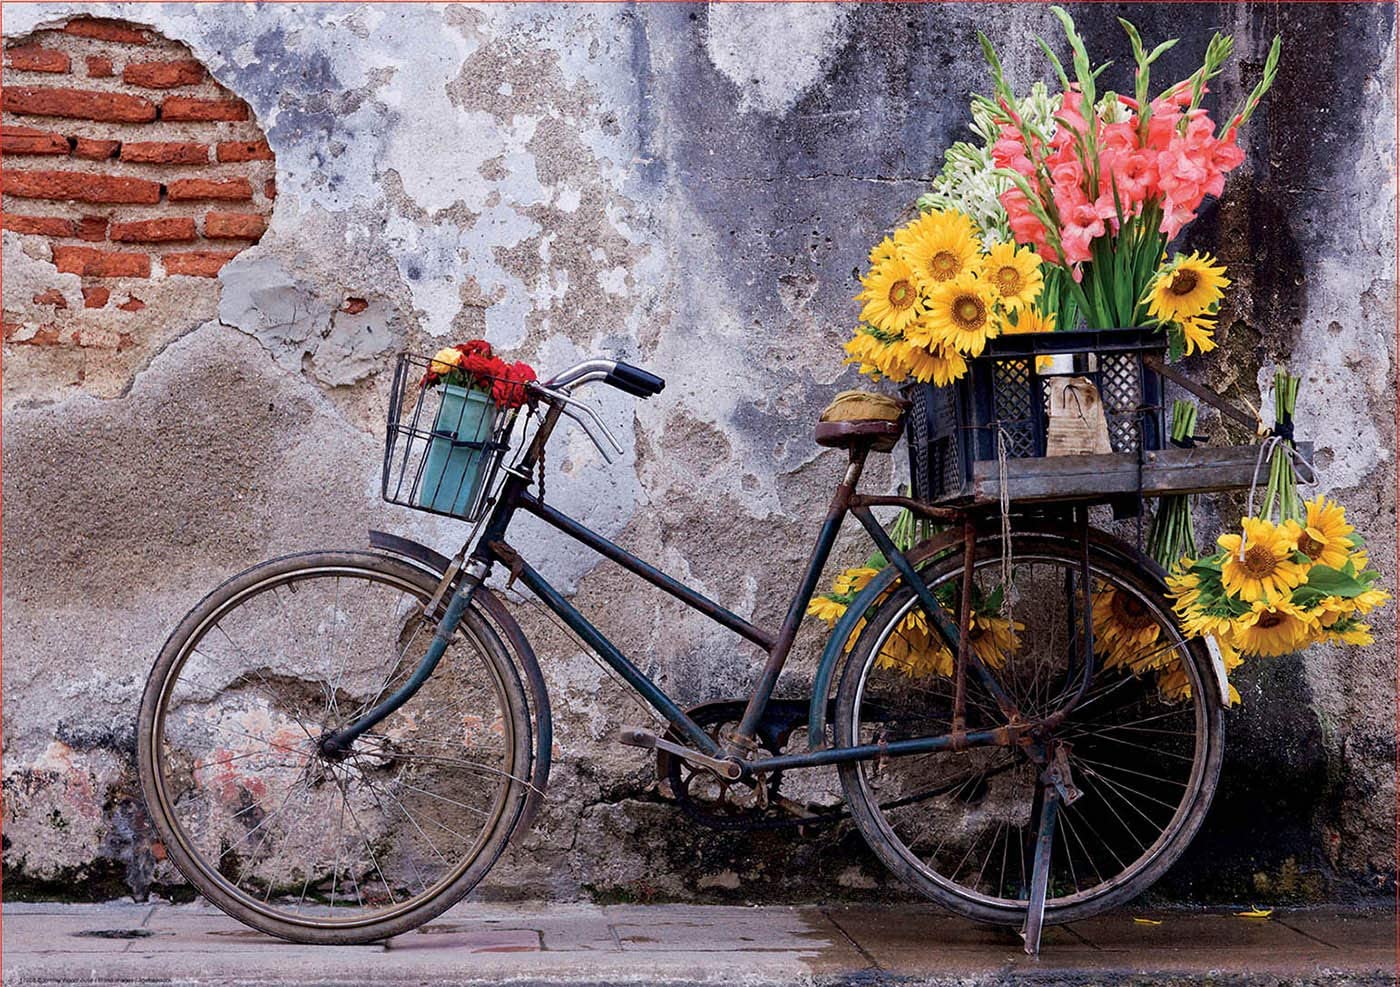 Bicicletta con fiori 500 pezzi